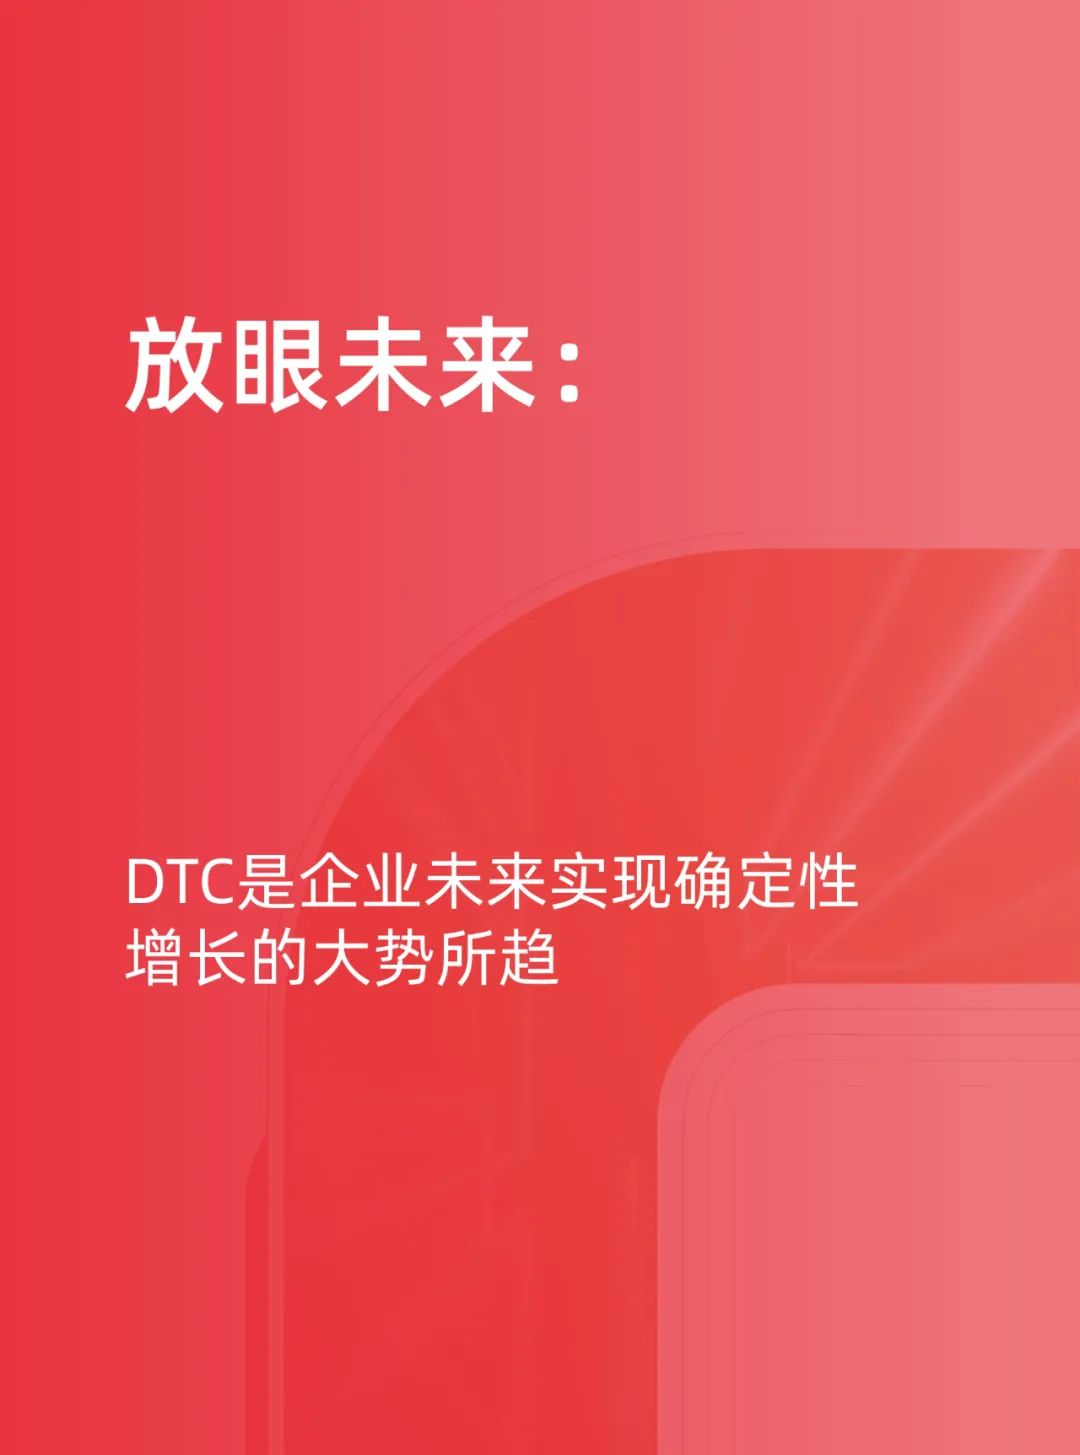 天猫DTC企业经营指南35页PPT转图 —— 快速响应，产品致胜